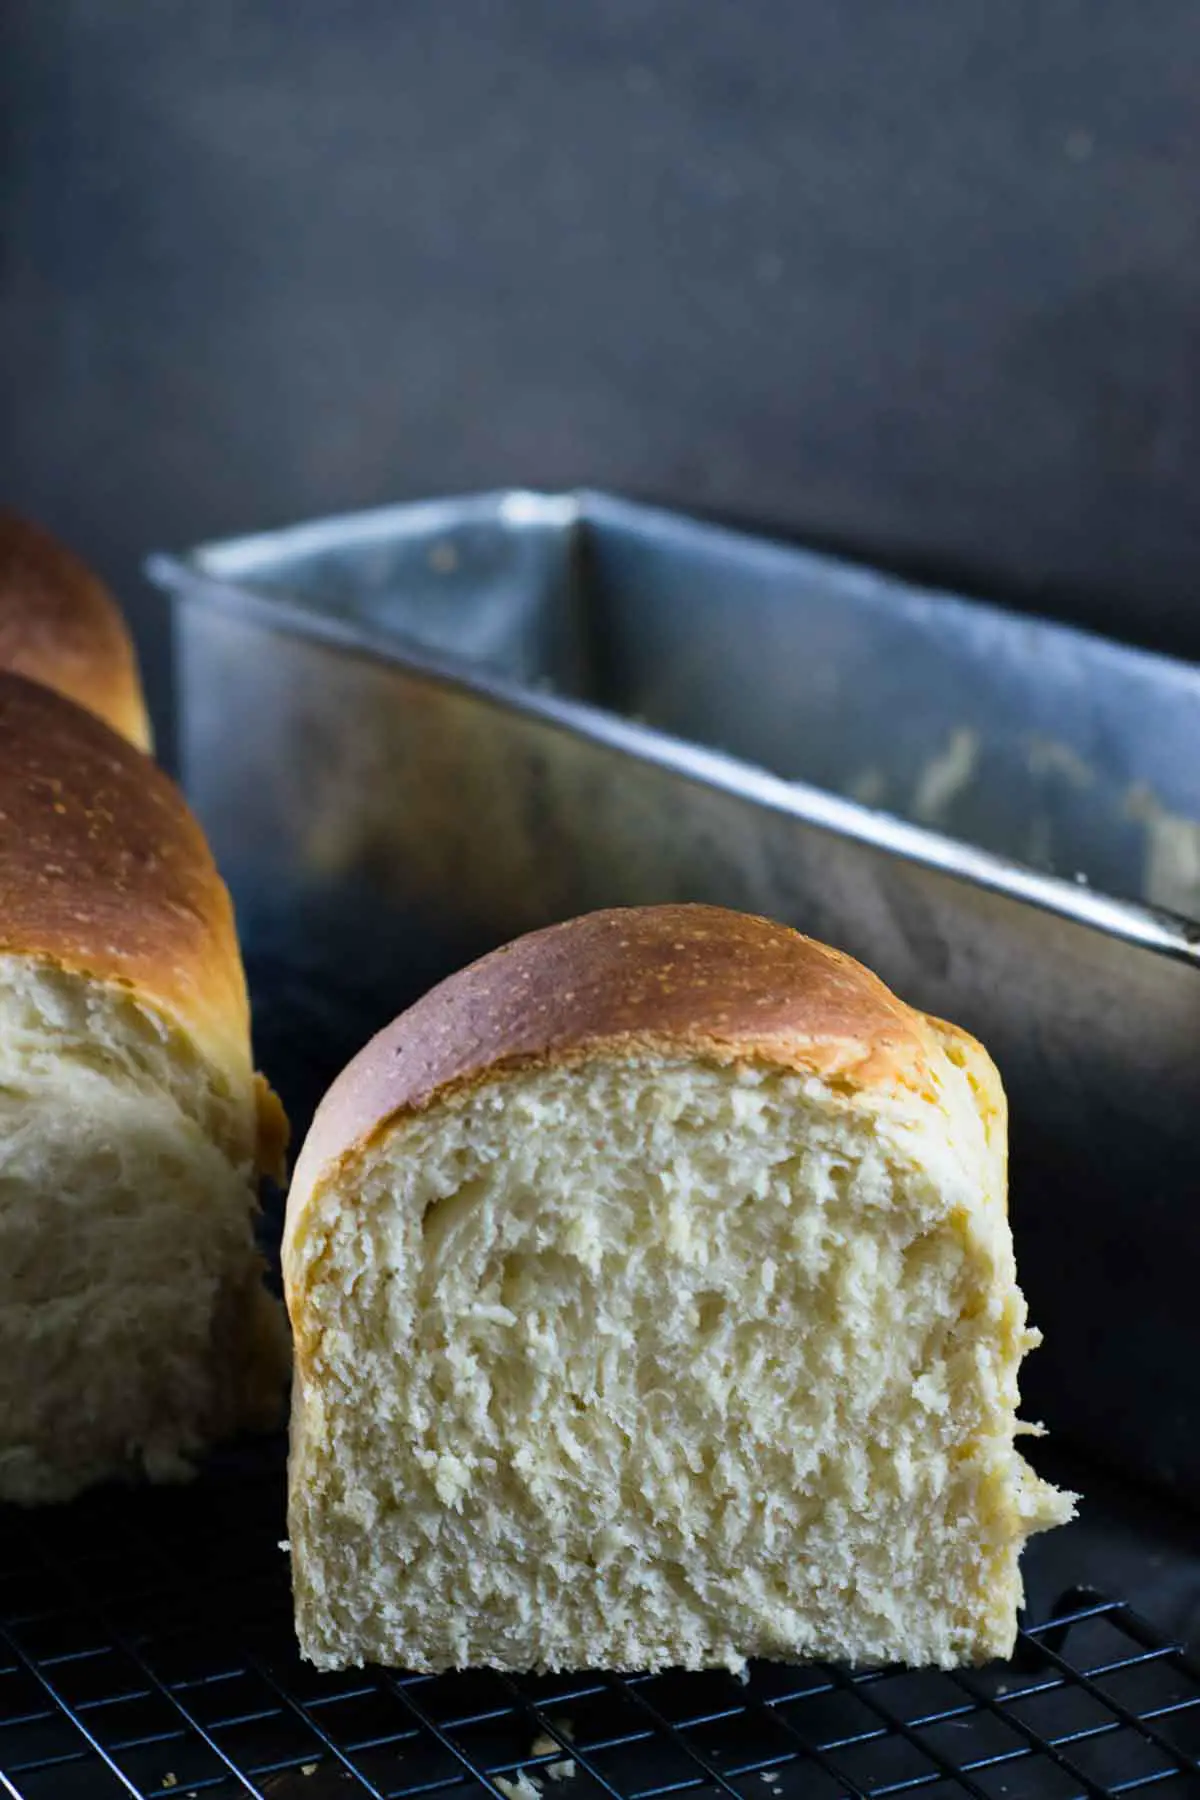 Imagem de pão caseiro, mostrando o pão cortado ao meio, em primeiro plano e a forma ao fundo